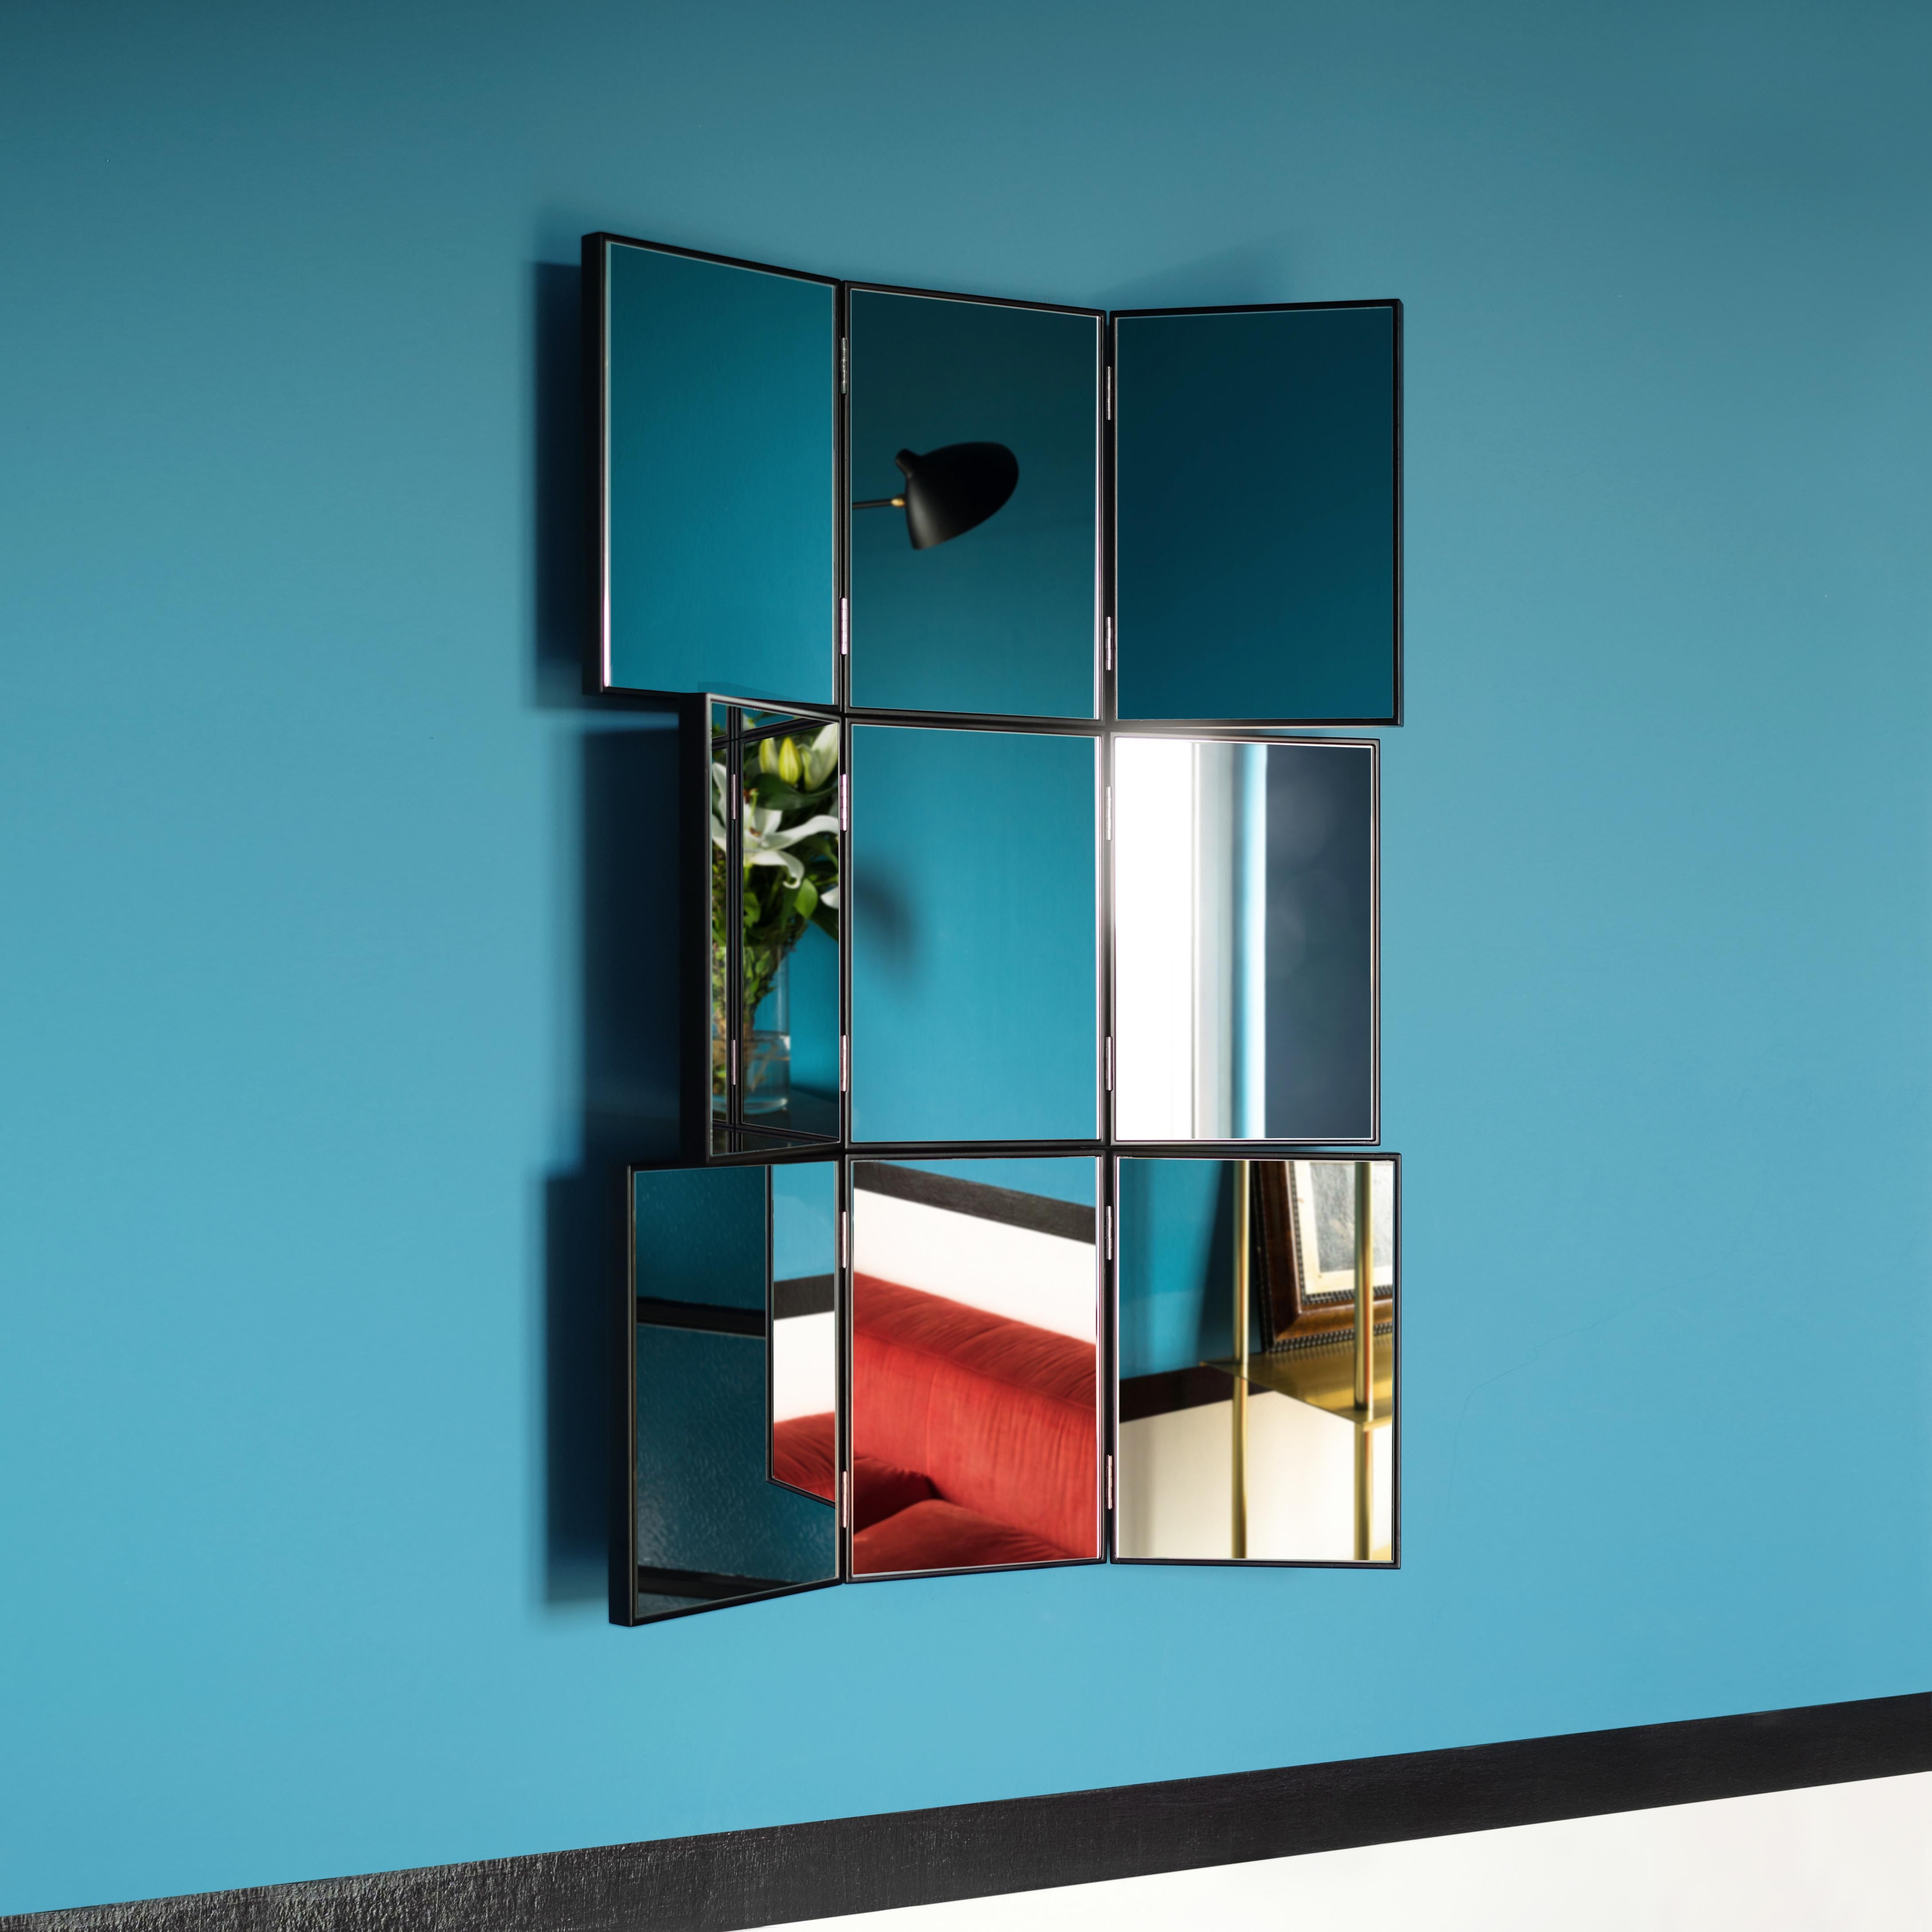 Spiegel 02
Verstellbarer Wandspiegel mit drehbaren Platten und lackierter Holzstruktur. Die beweglichen Paneele ermöglichen es, die Reflexion zu unterbrechen und dynamisch mit der Umgebung zu spielen, wodurch dieses Stück in jeder Umgebung eine